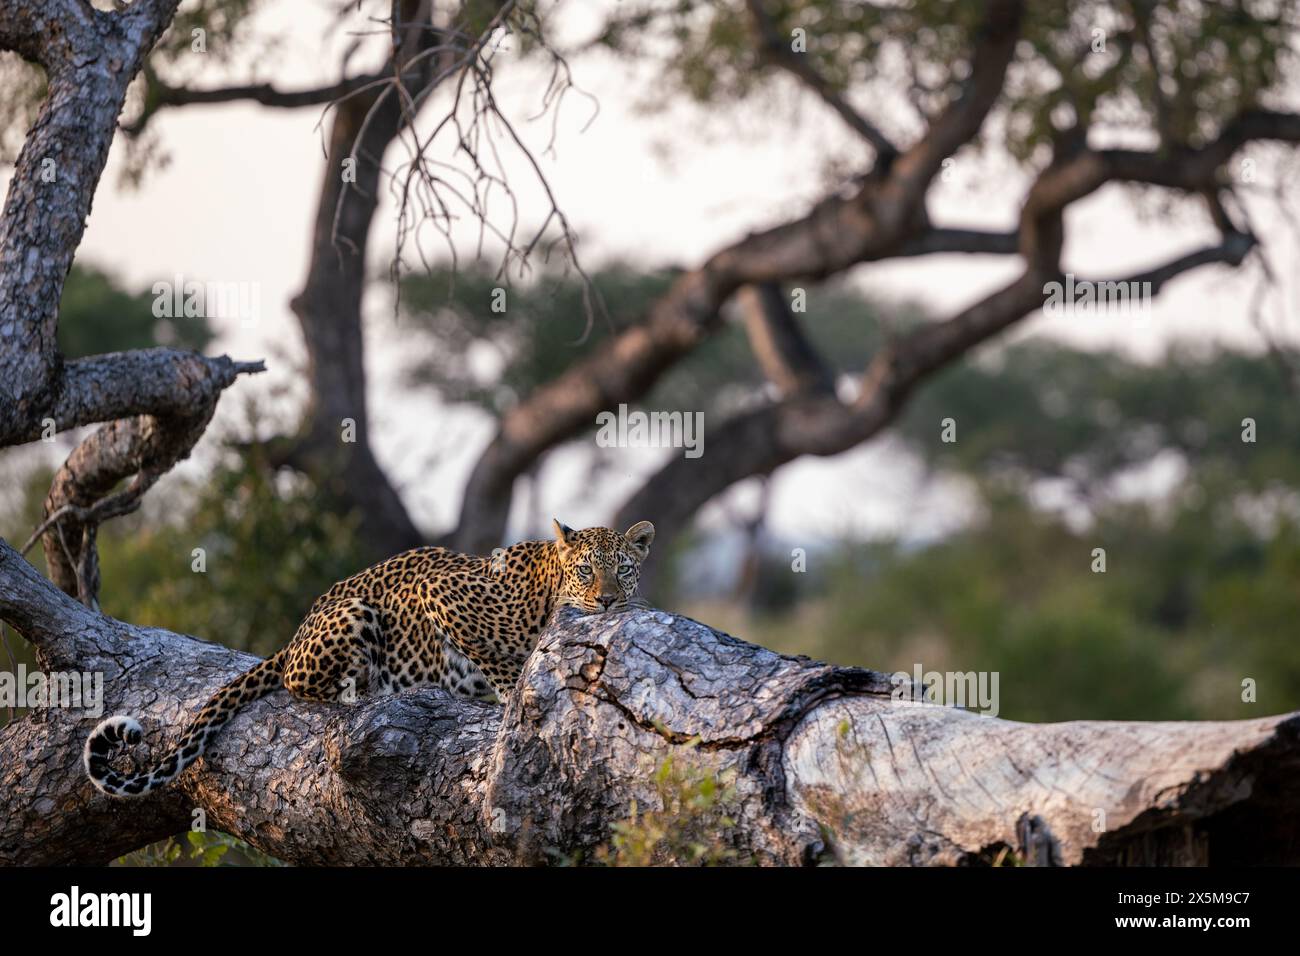 Eine Leopardenfrau, Panthera pardus, liegt auf einem Baumstamm. Stockfoto